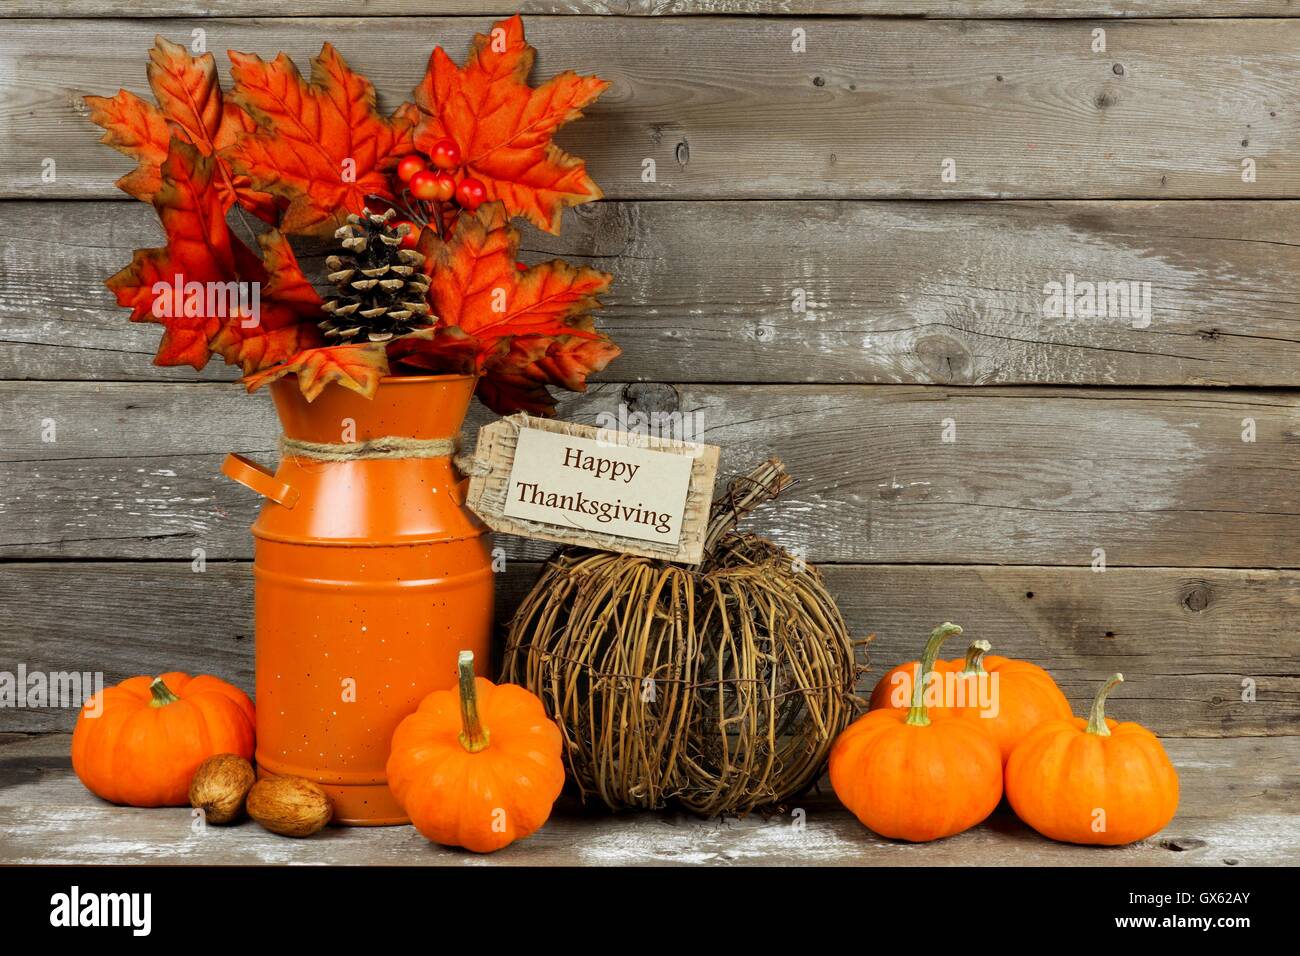 Felice ringraziamento tag, zucche e autunno home decor con arredamento di legno rustico sfondo Foto Stock